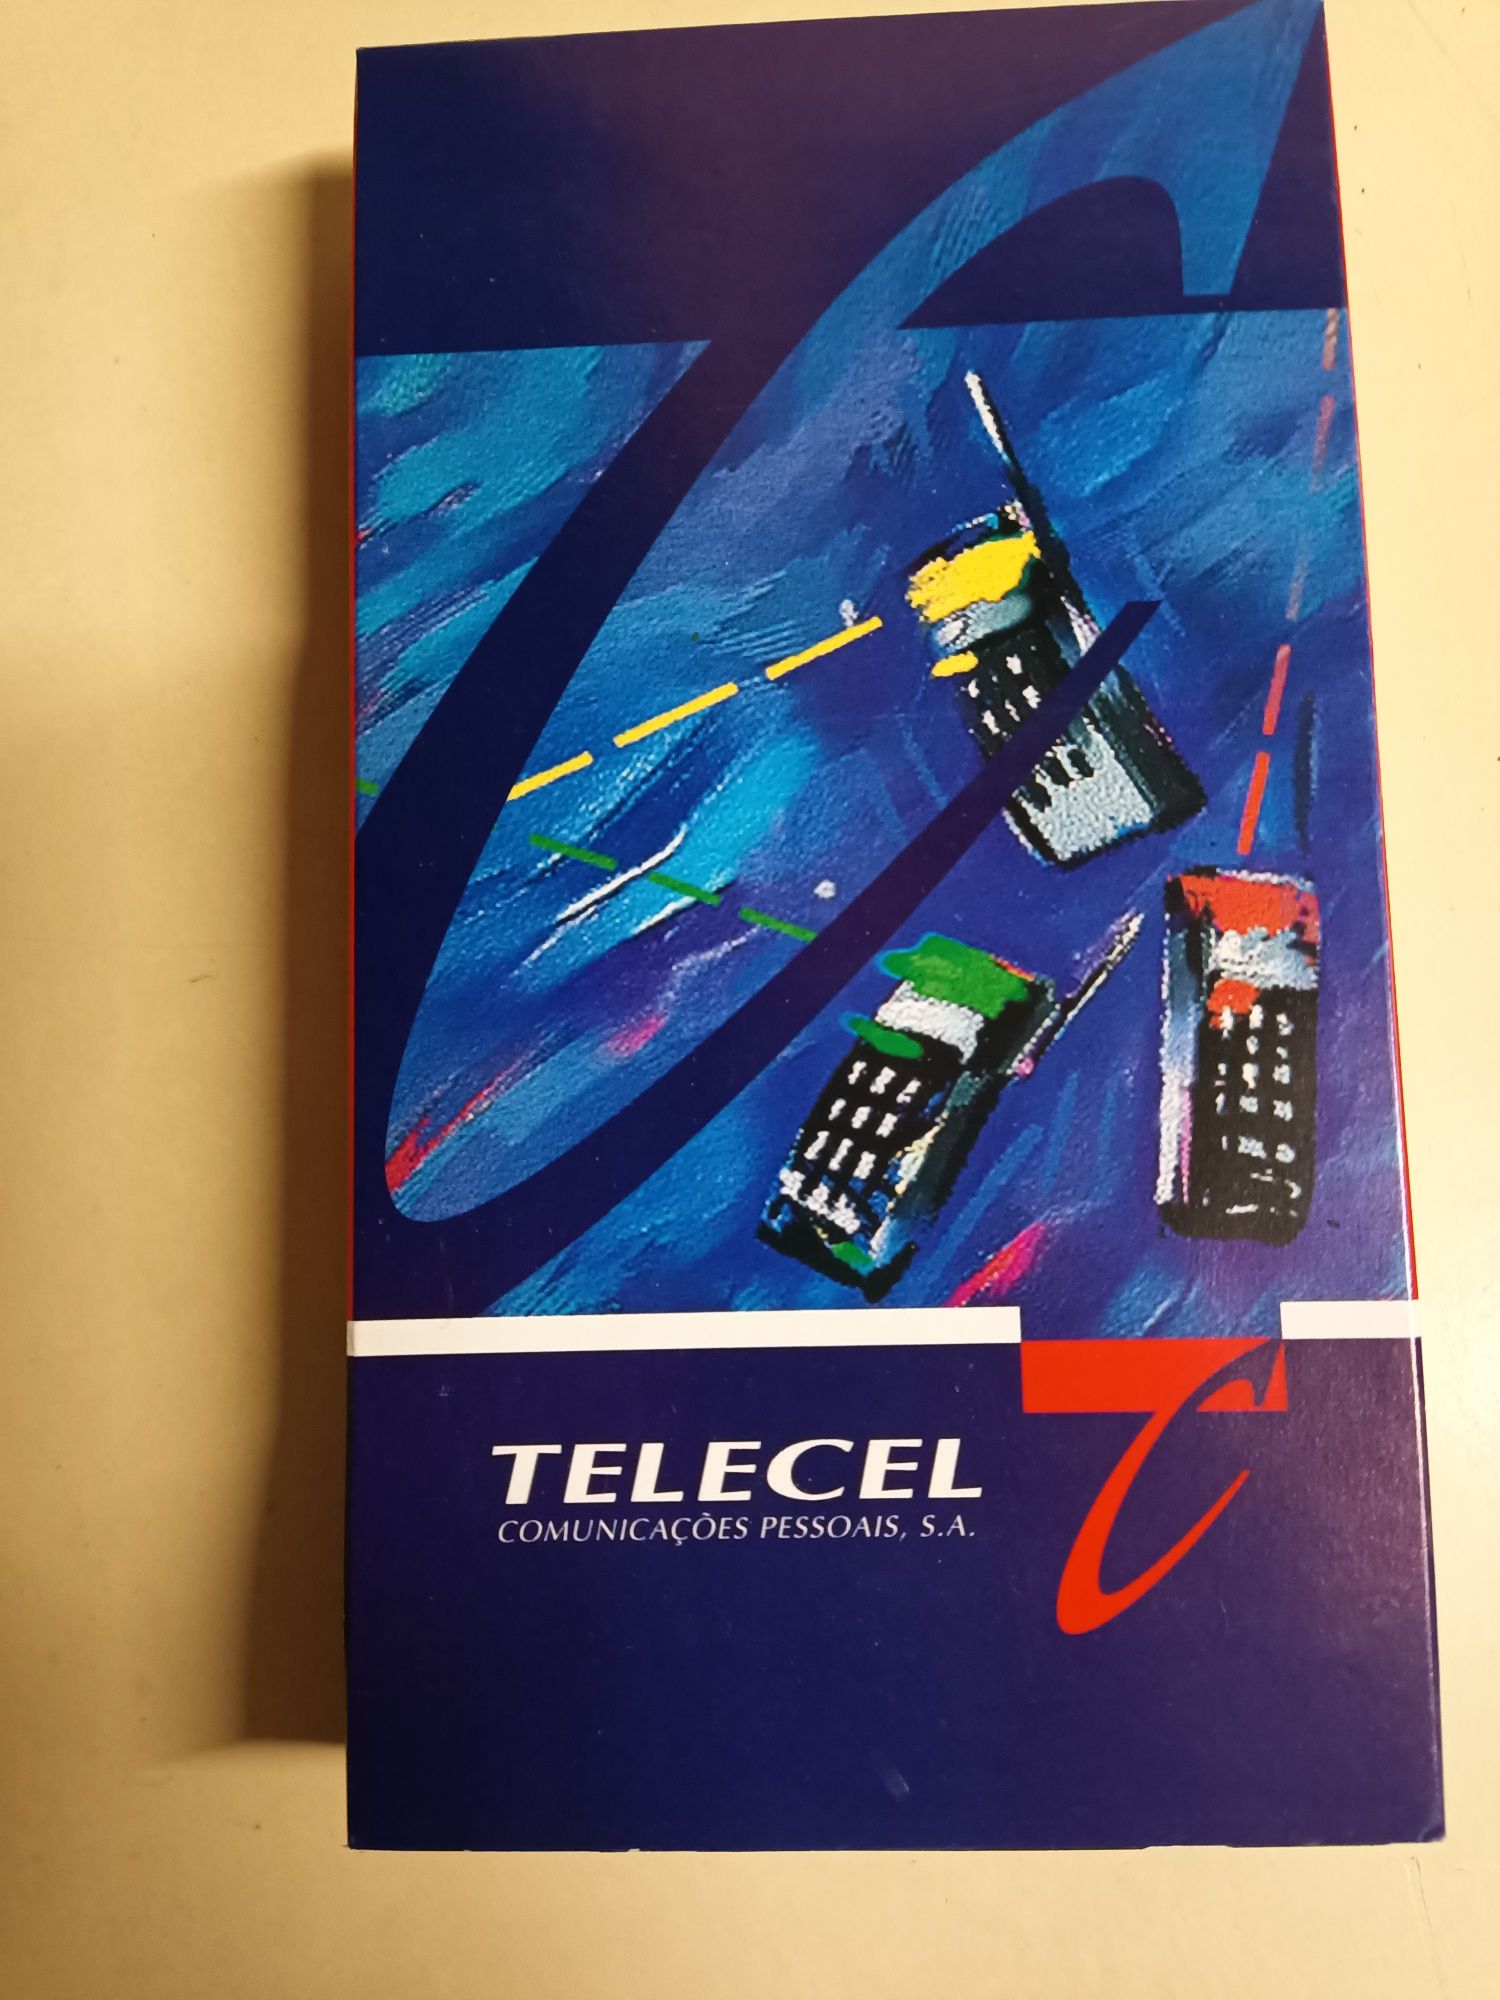 Caixa de telemóveis Telecel Anos 90's